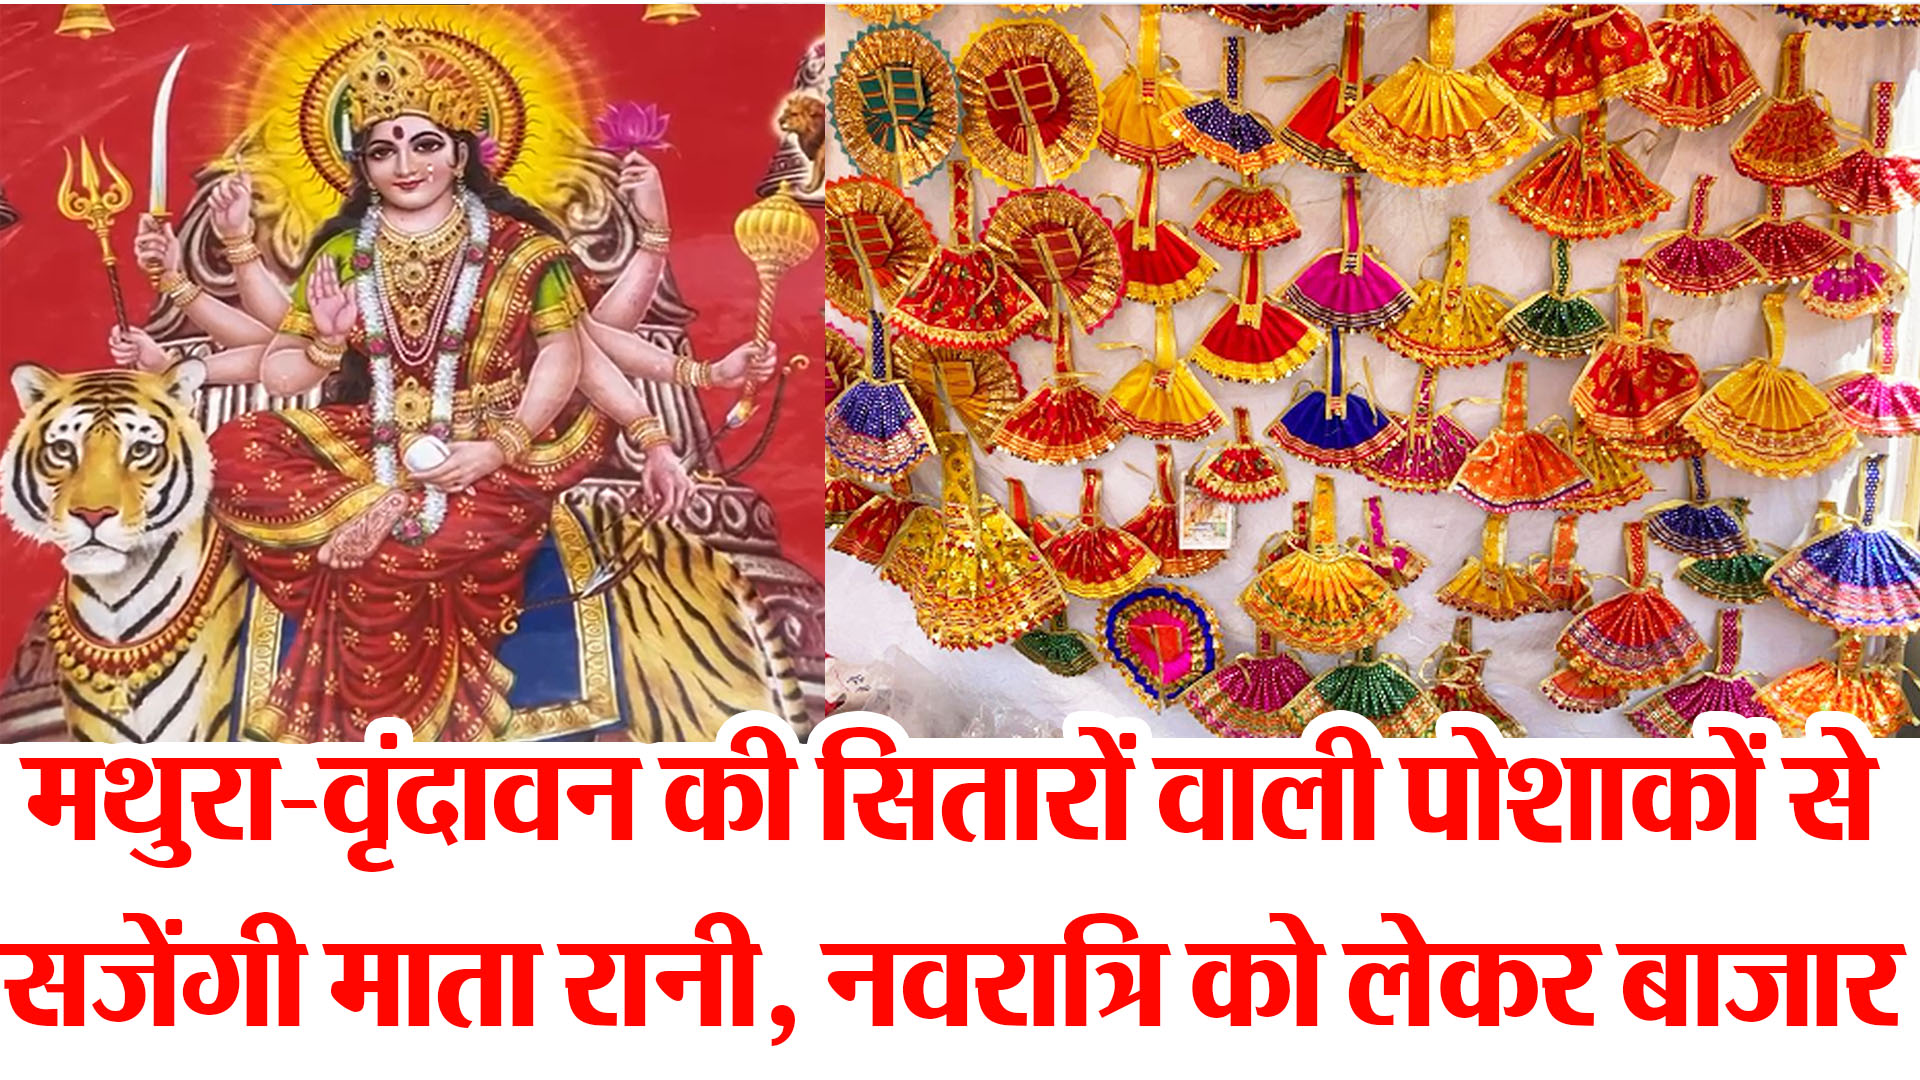 बरेली: मथुरा-वृंदावन की सितारों वाली पोशाकों से सजेंगी माता रानी, नवरात्रि को लेकर बाजार गुलजार